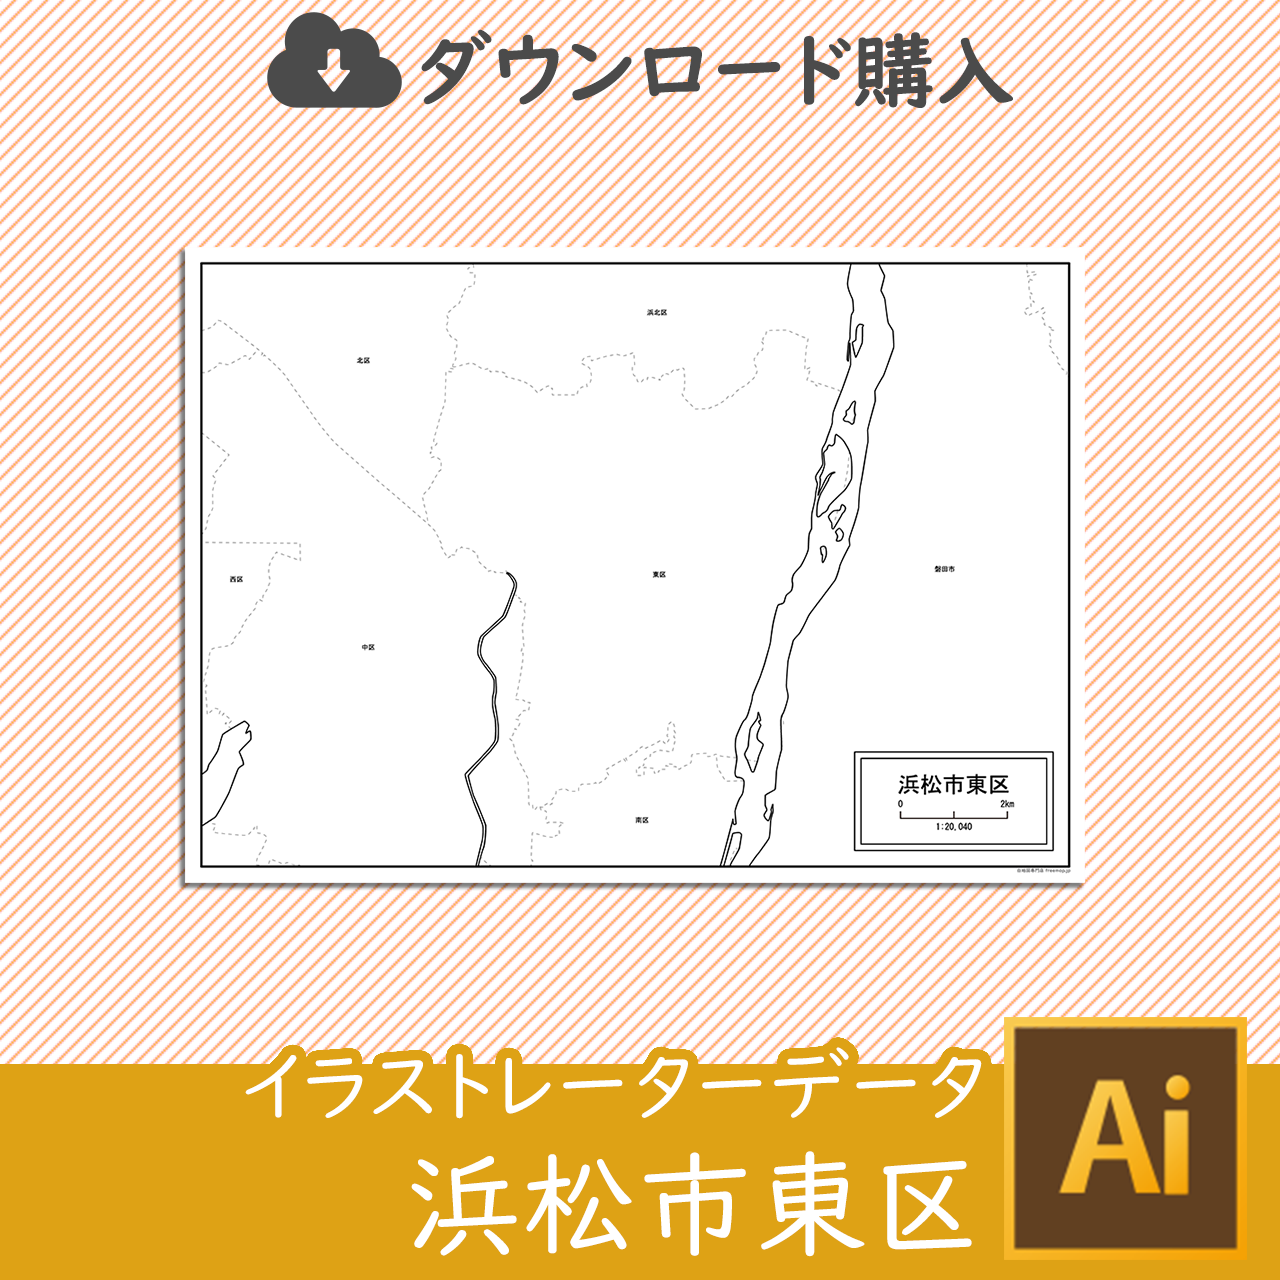 浜松市東区のaiデータのサムネイル画像